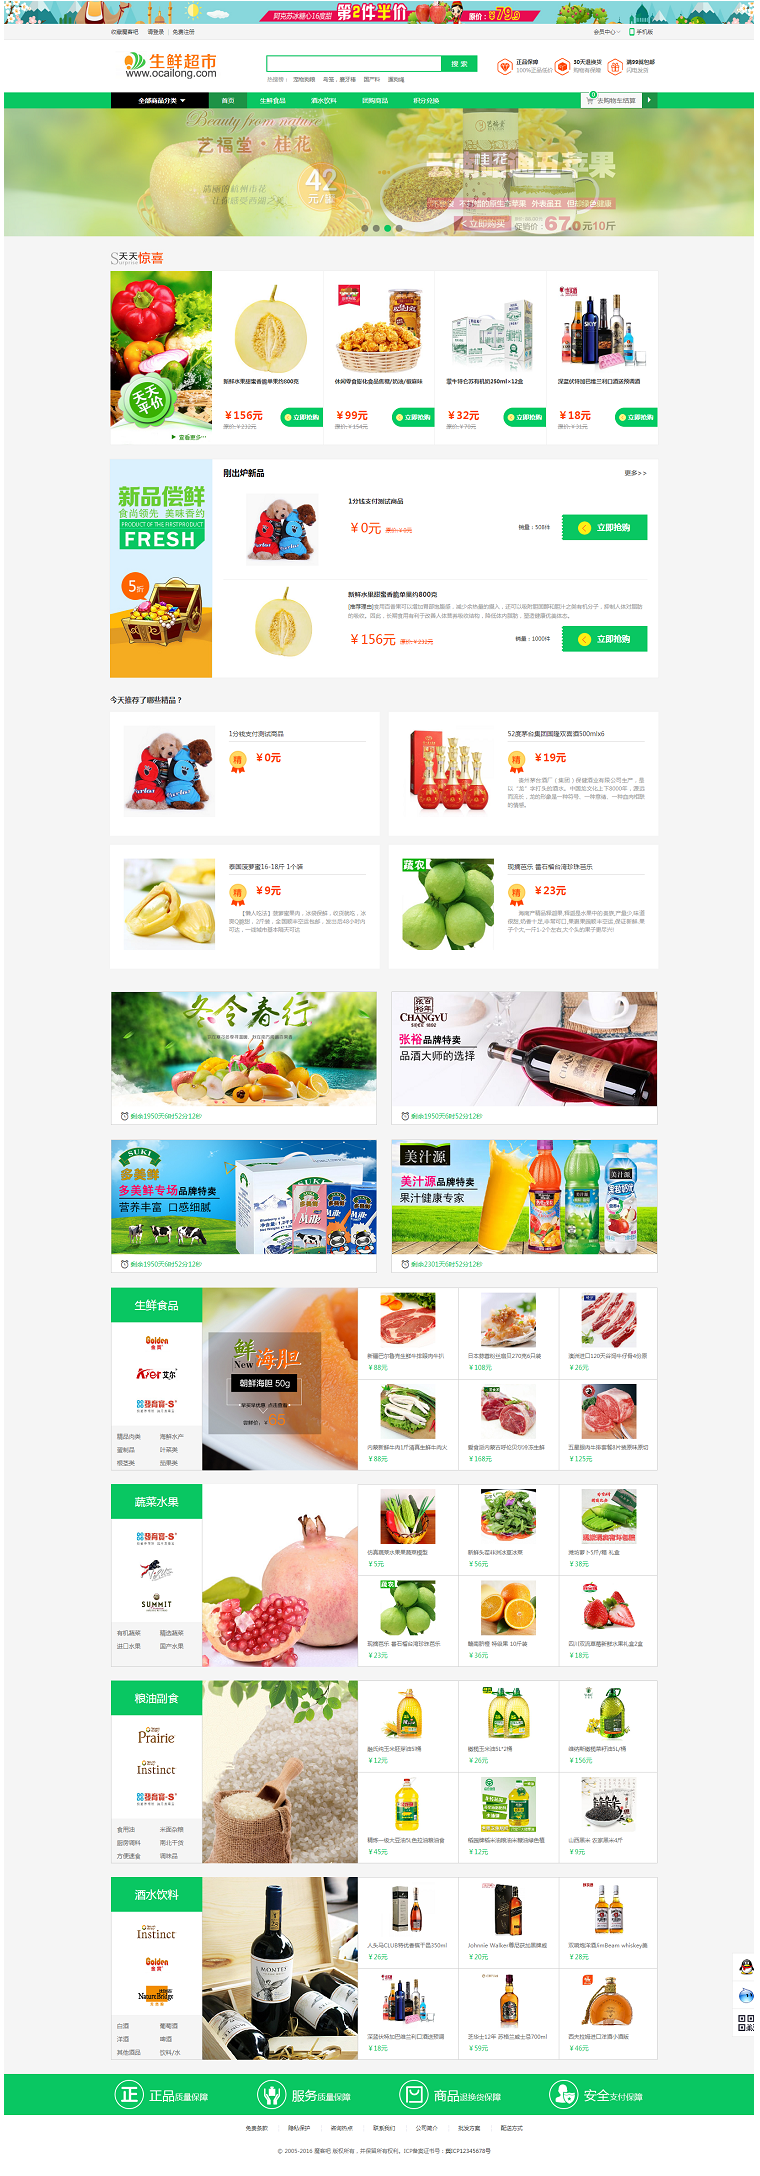 生鲜超市网站演示配图.png